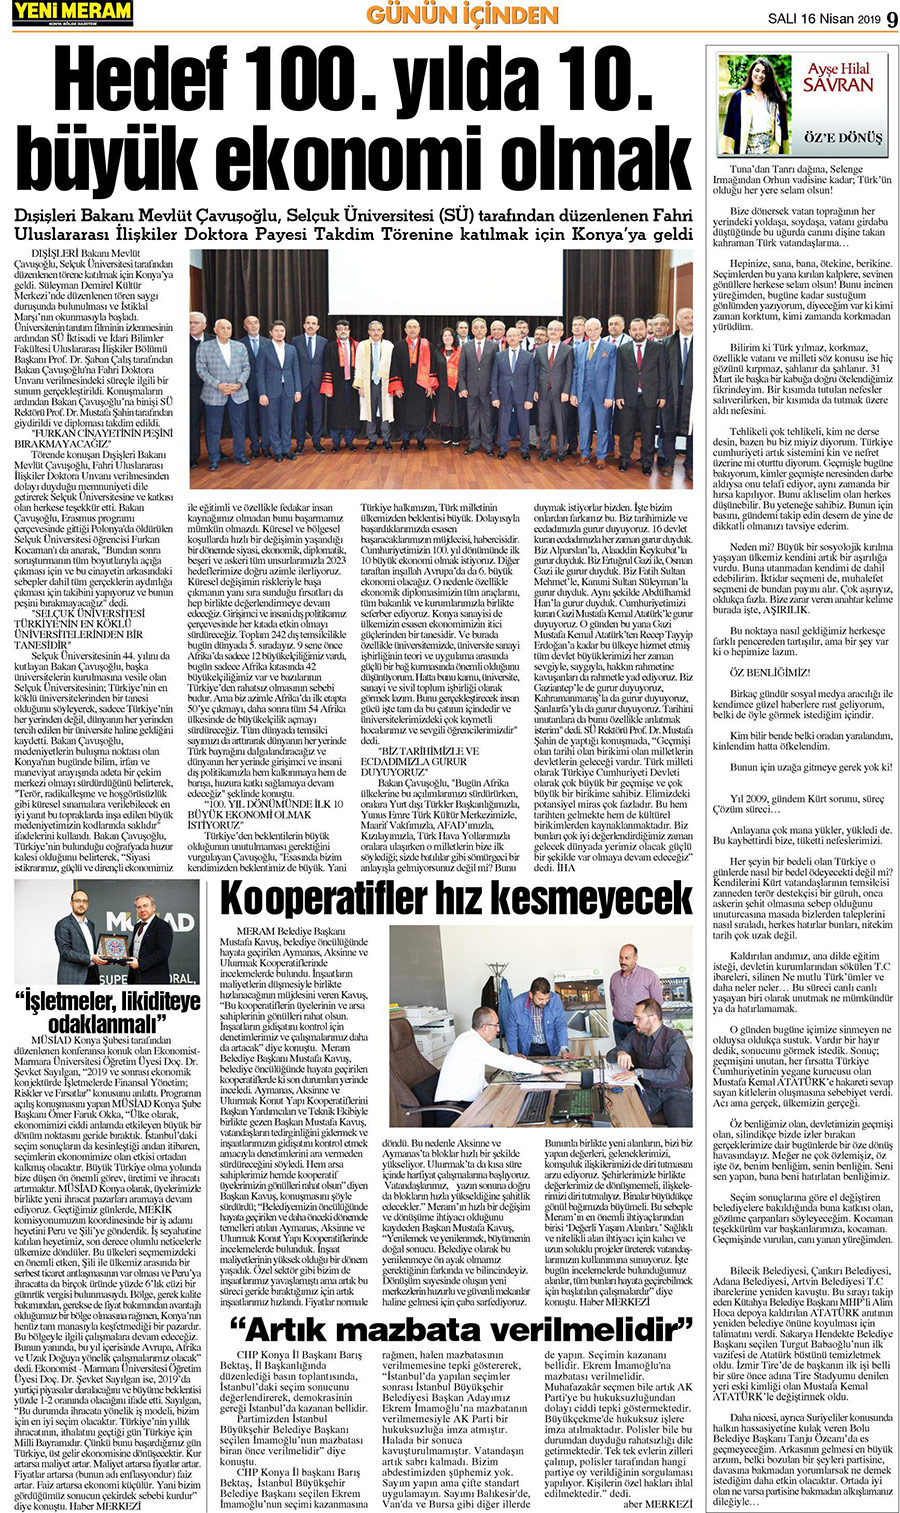 16 Nisan 2019 Yeni Meram Gazetesi